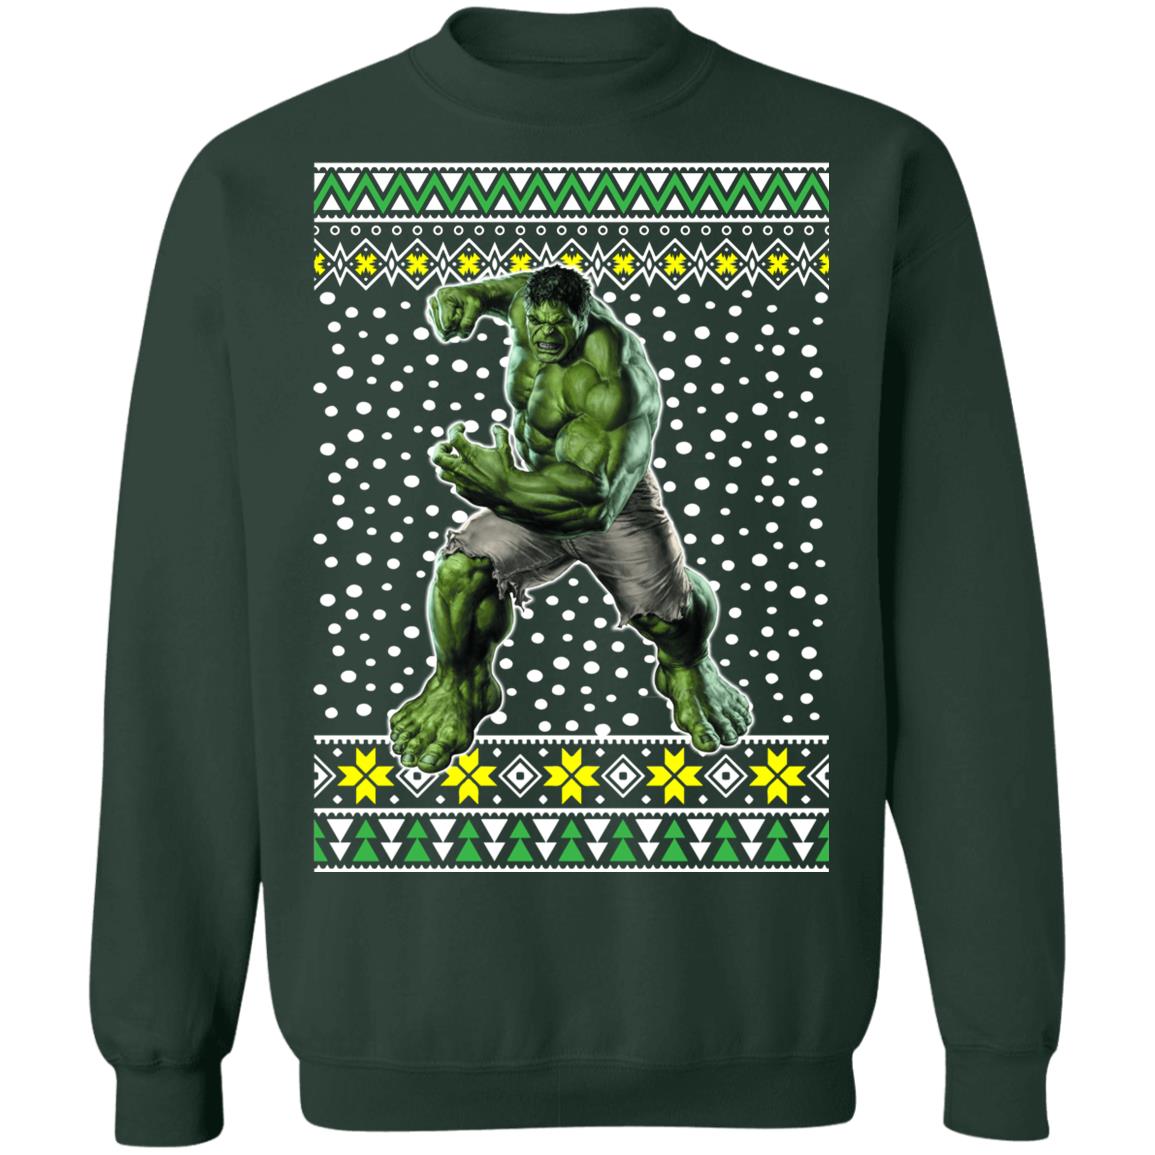 fullmetal alchemist sweater